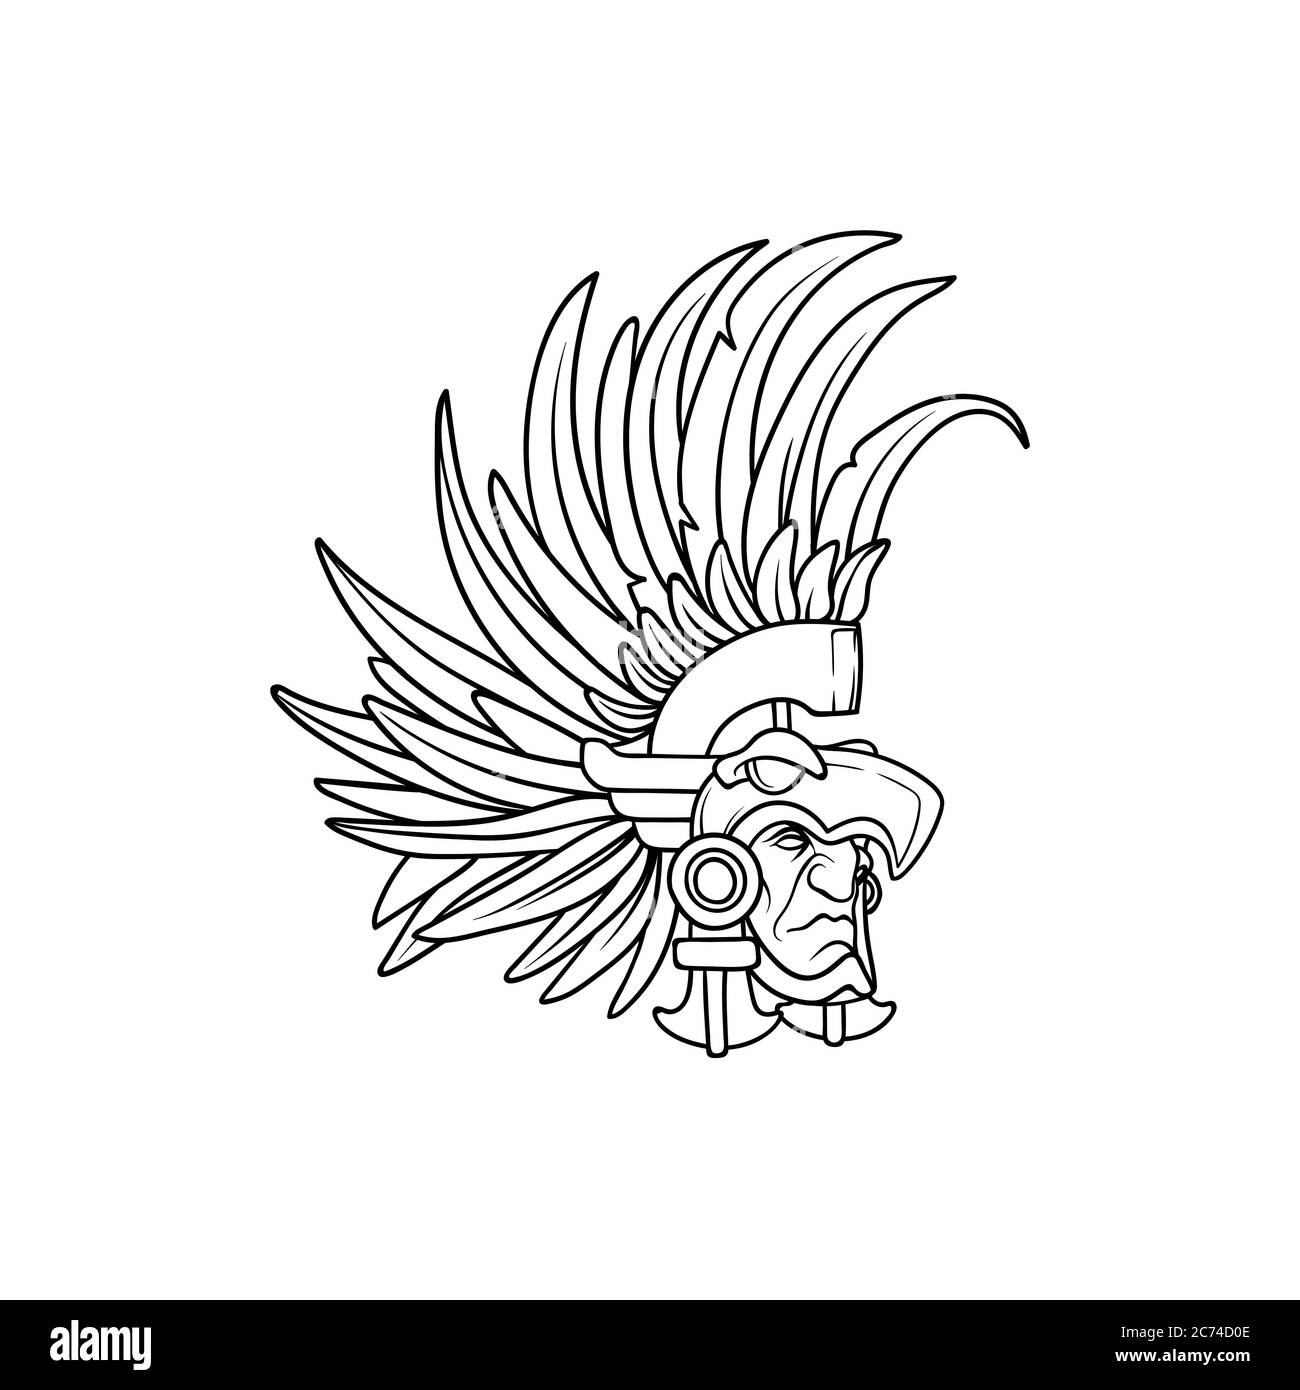 Contour étonnant d'un guerrier aztèque d'élite portant un casque aigle avec des plumes Illustration de Vecteur